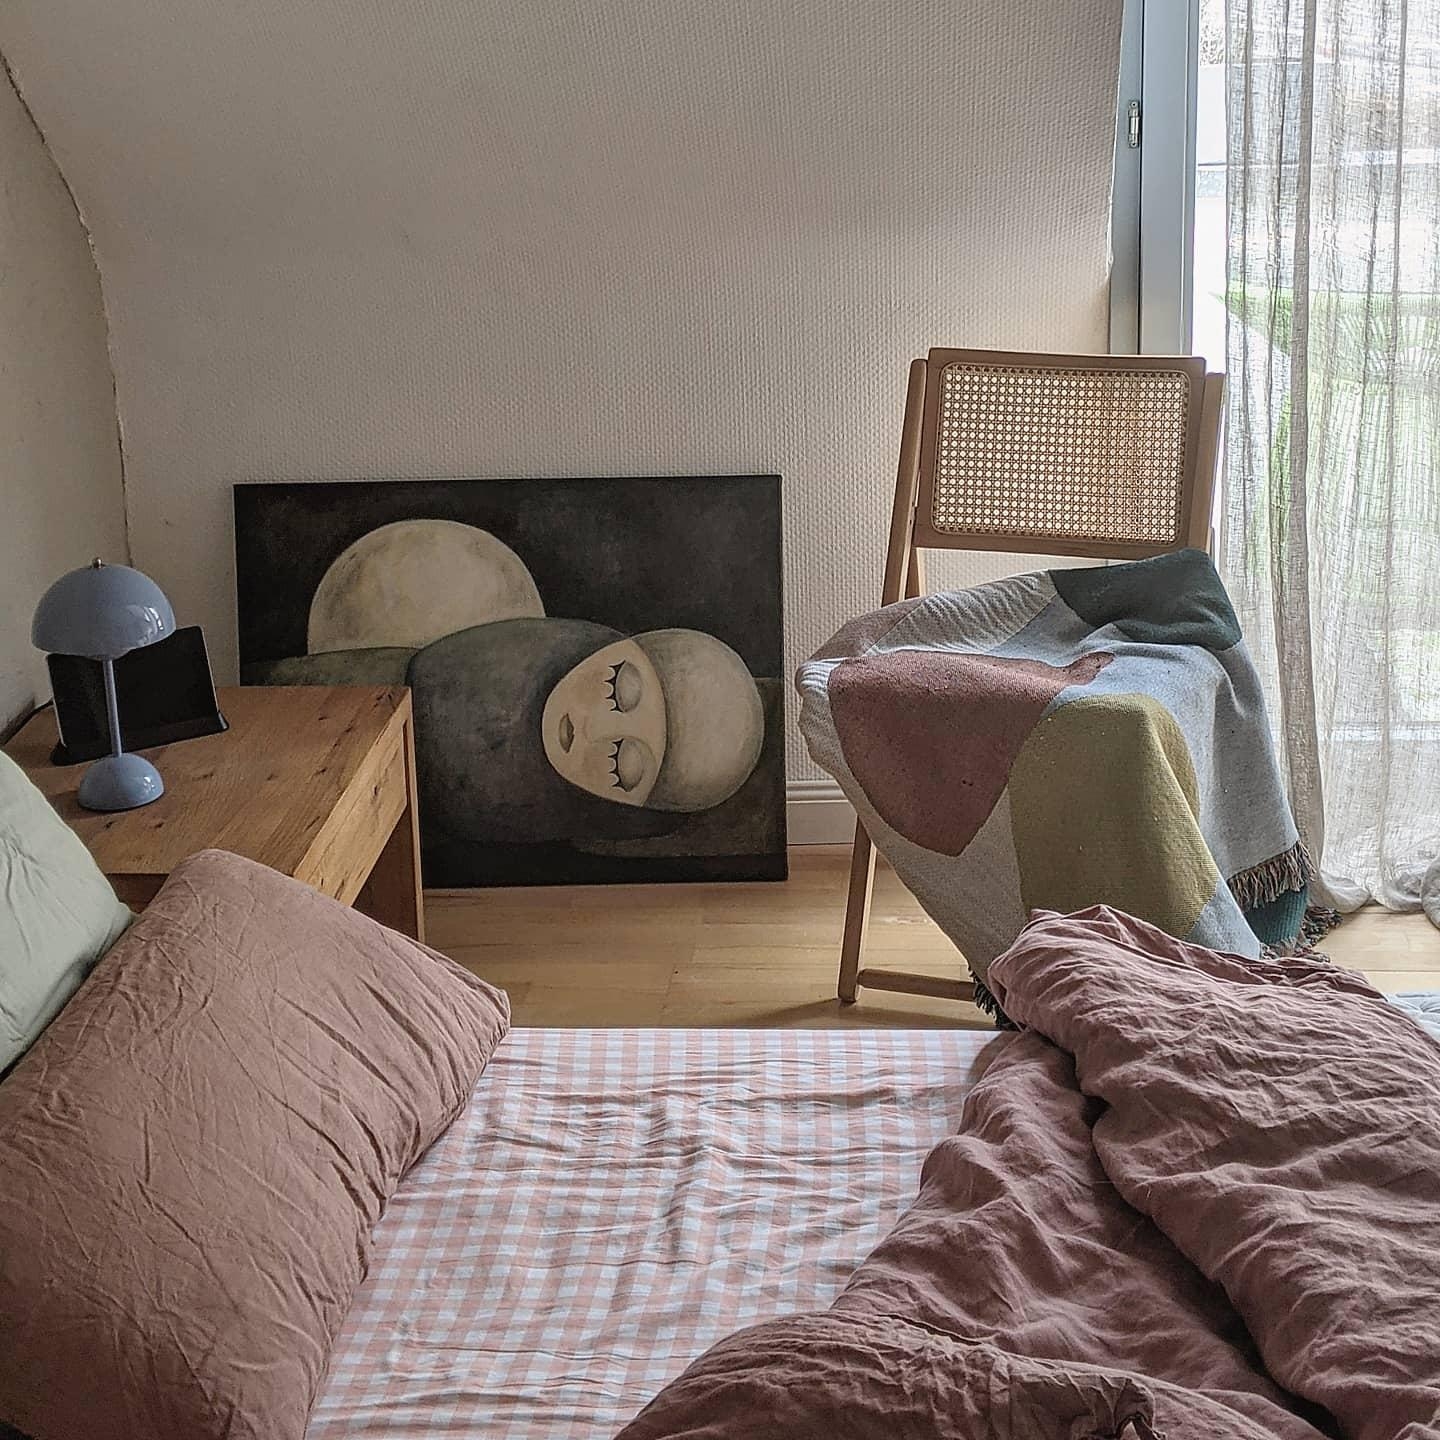 #schlafzimmer #bild#home#wohnen#living#altbau#interior#home#bett#scandinavisch#couchstyle#cozy